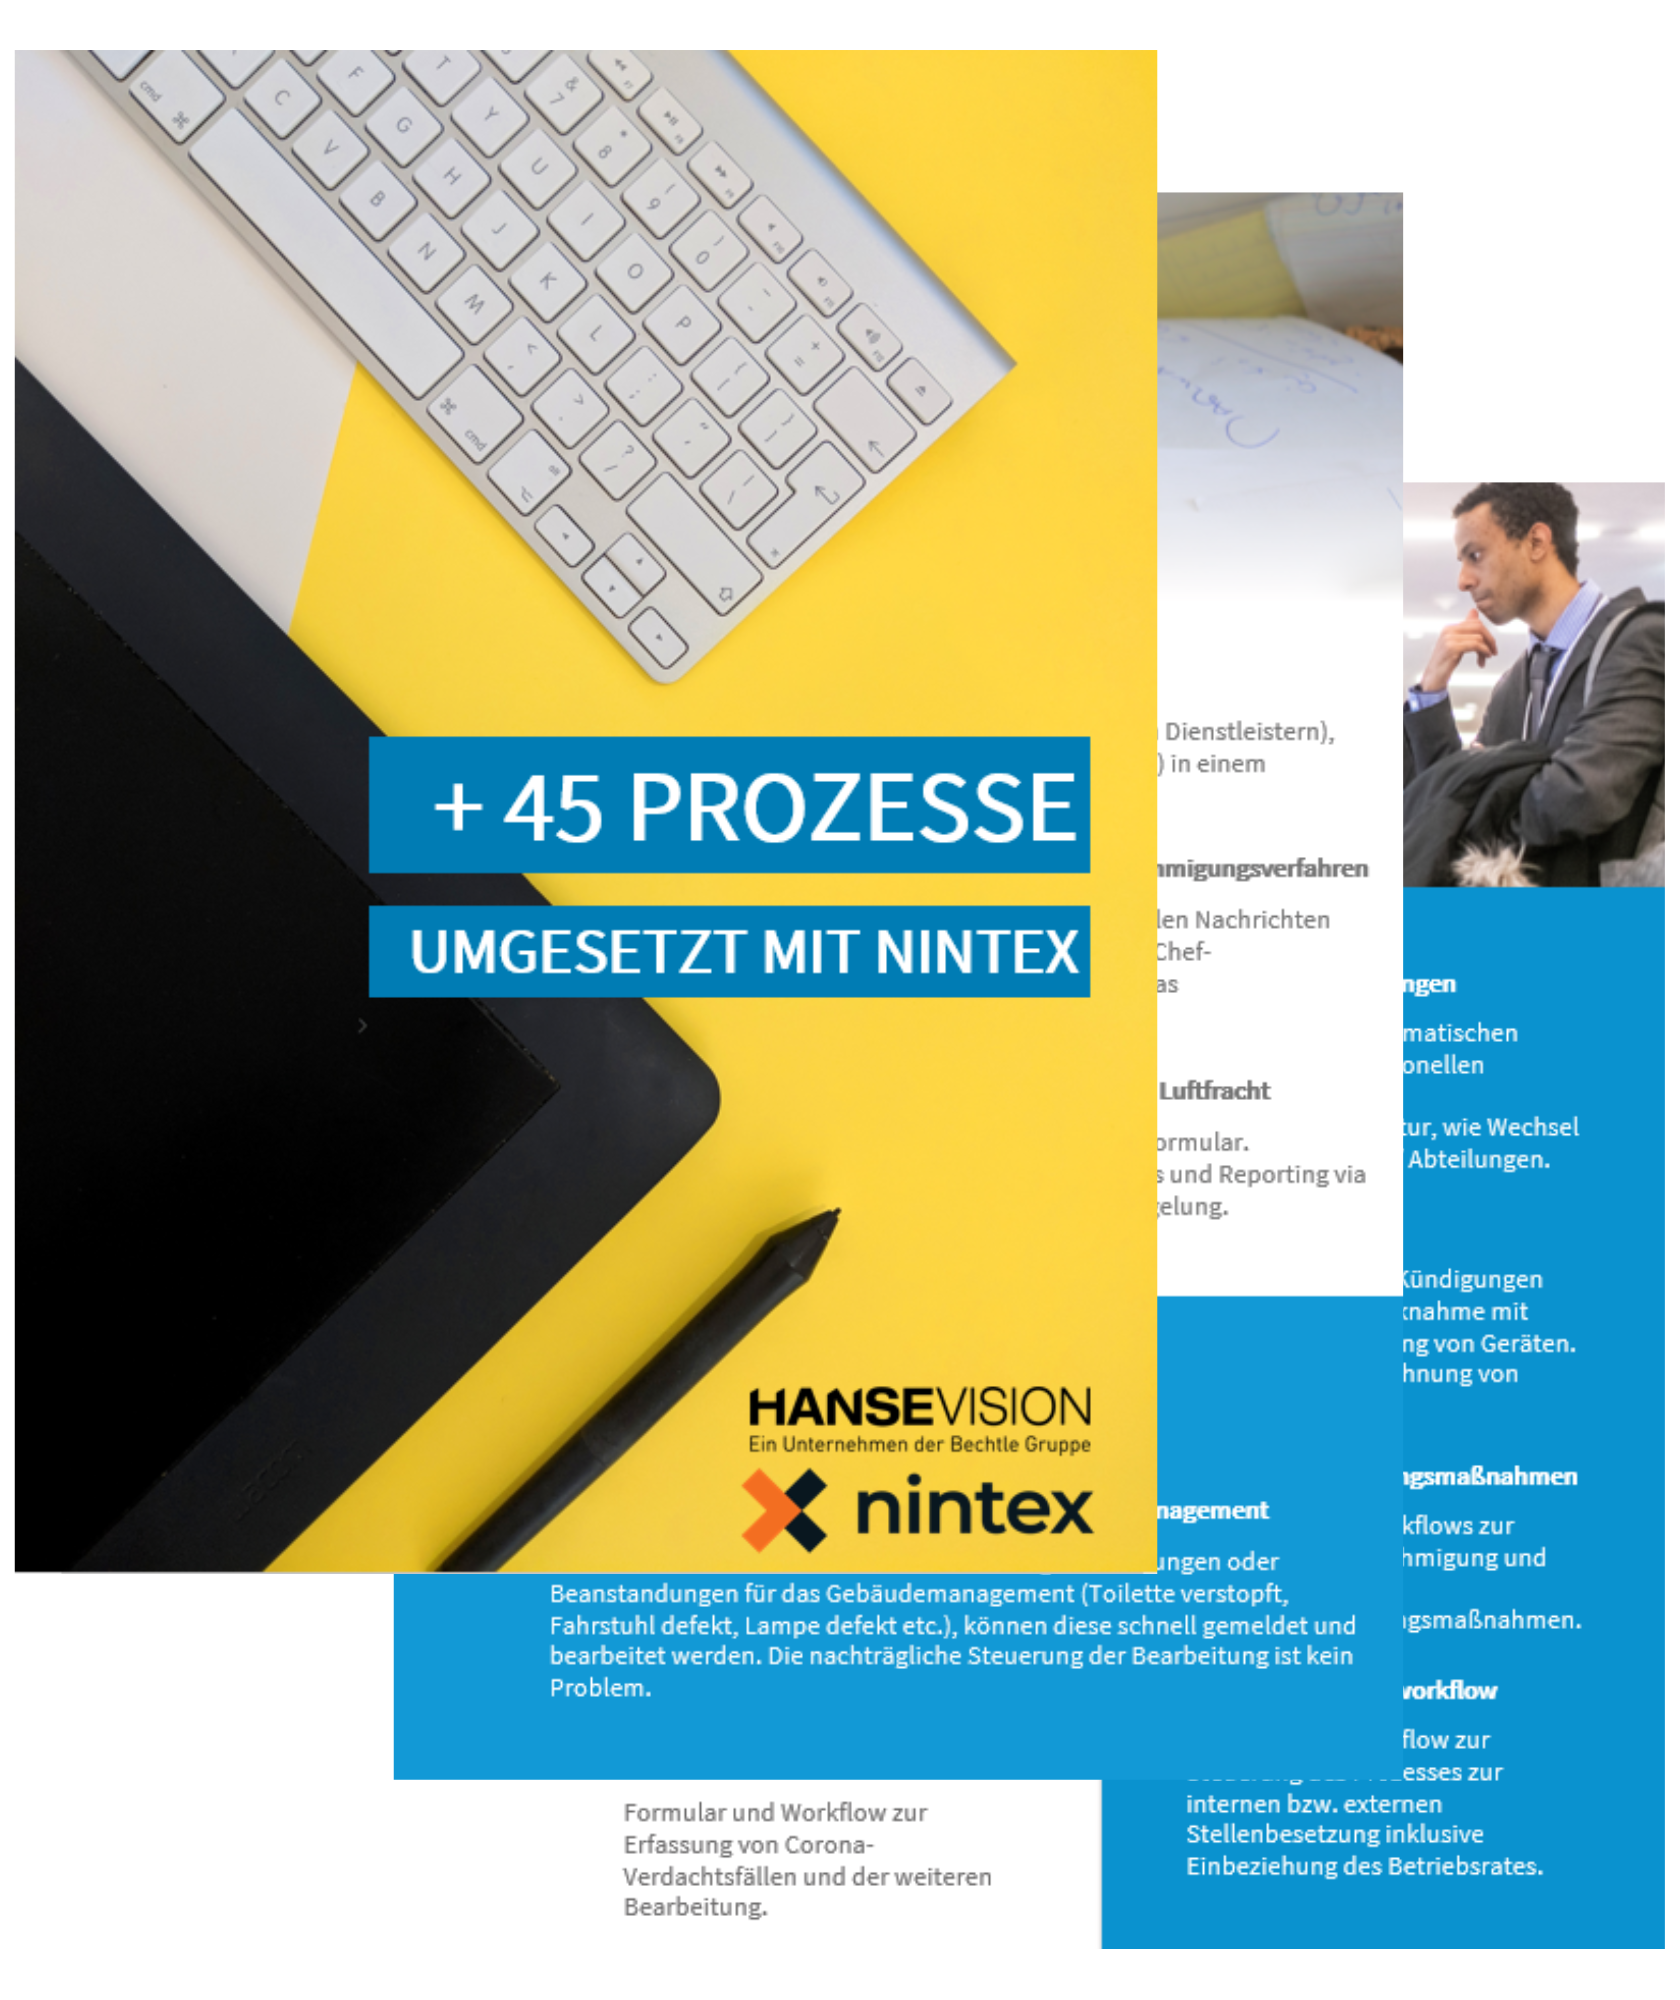 Vorschau_Whitepaper_Nintex45+